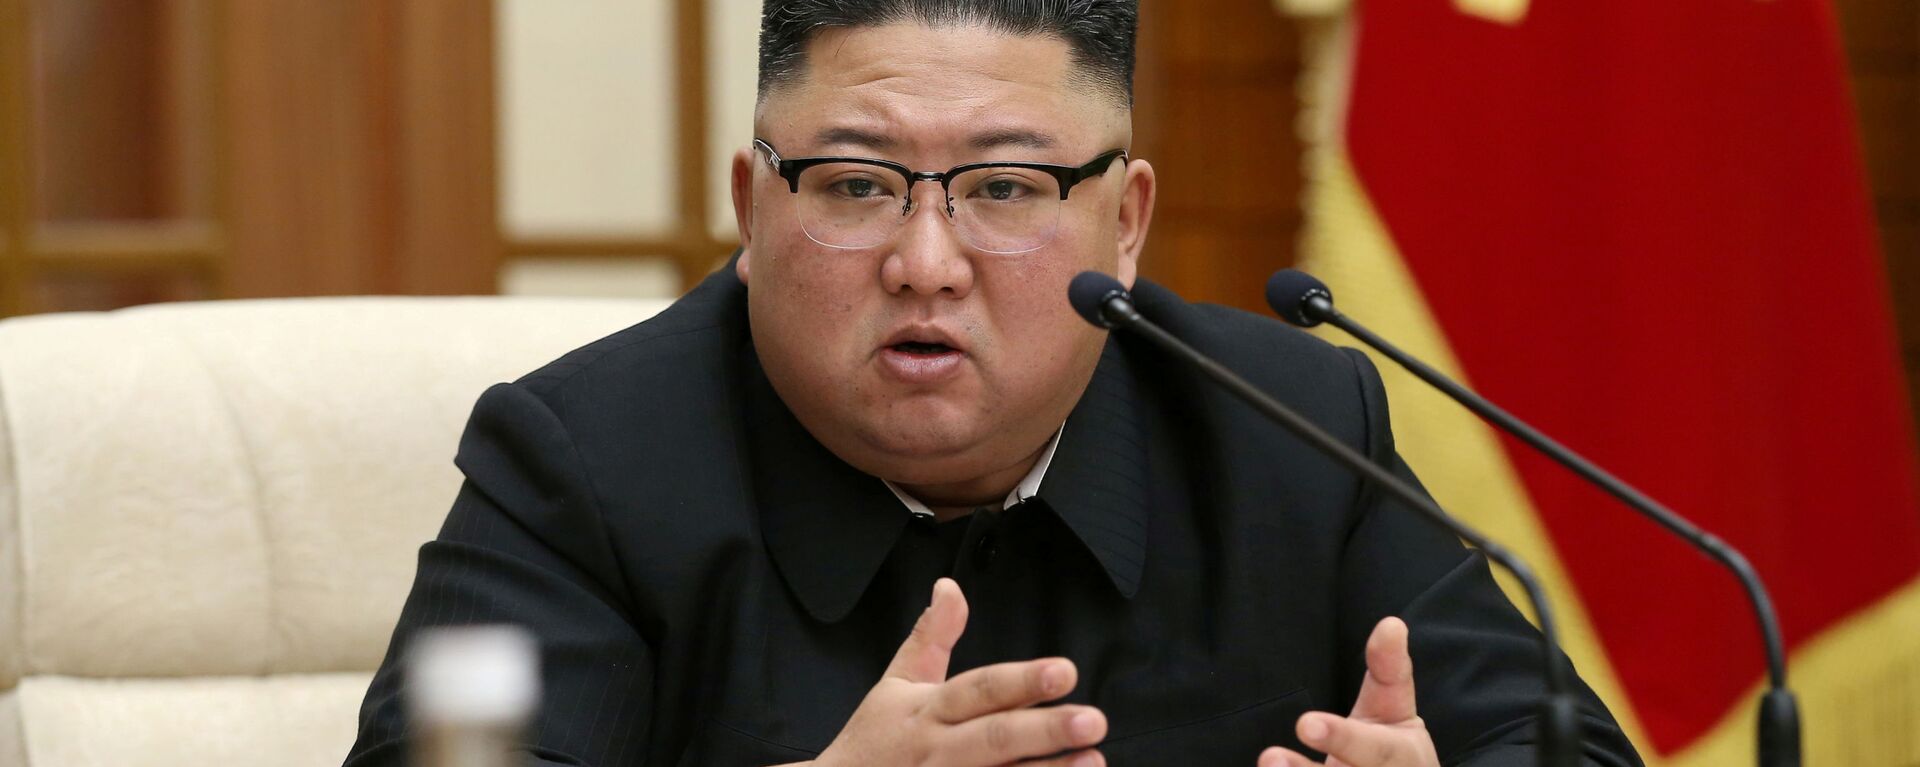 El líder norcoreano, Kim Jong-un - Sputnik Mundo, 1920, 29.12.2020